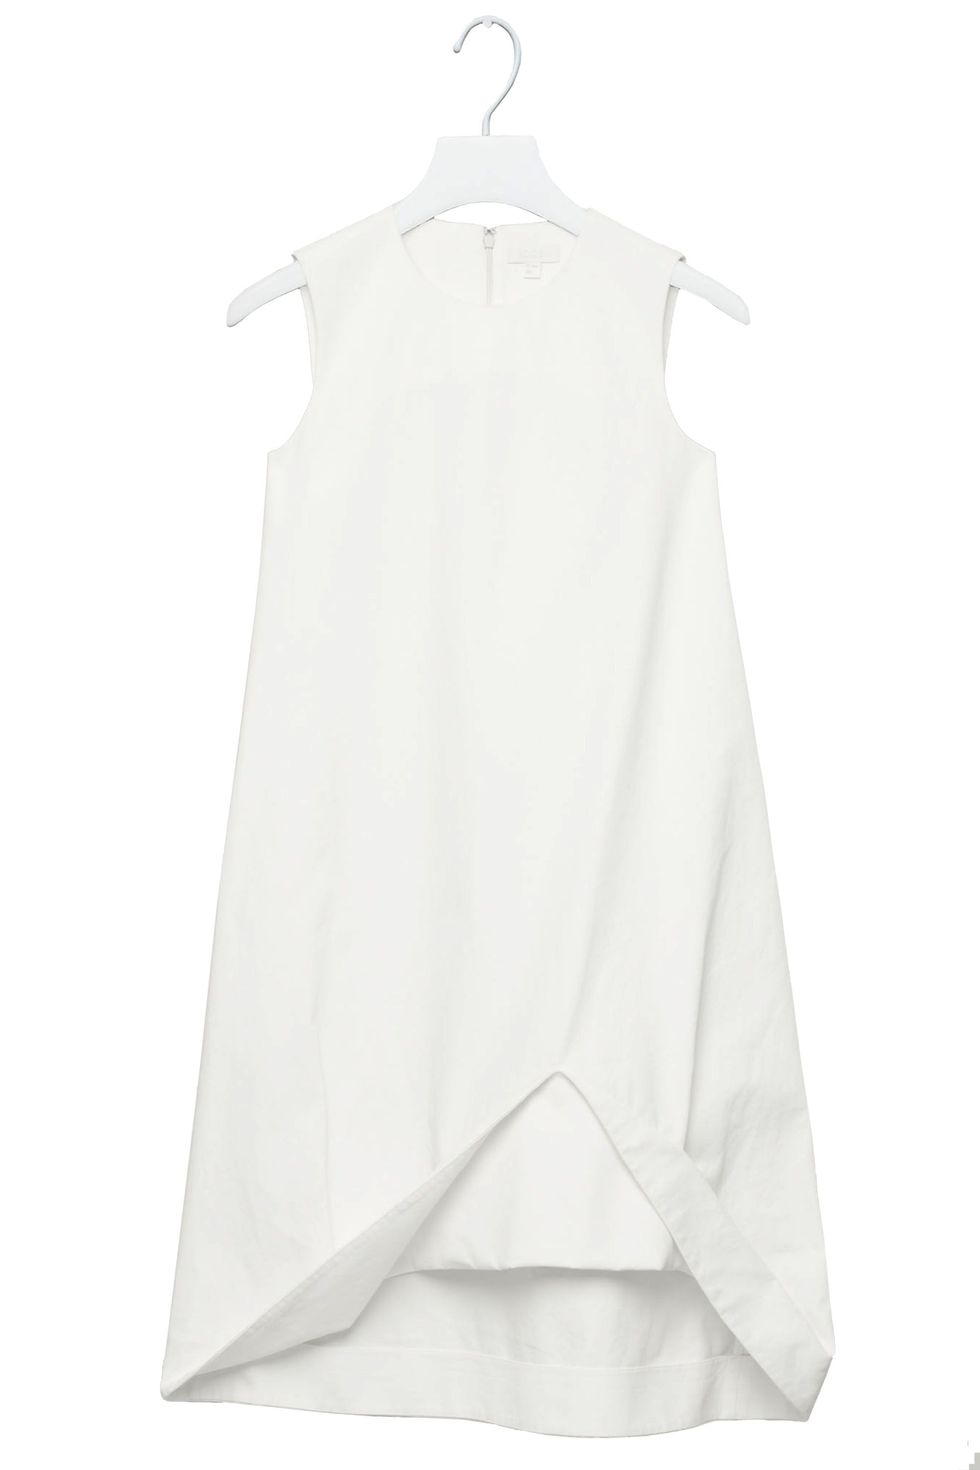 Best White Summer Dresses for 2017 - Our Favorite Little White Dress ...